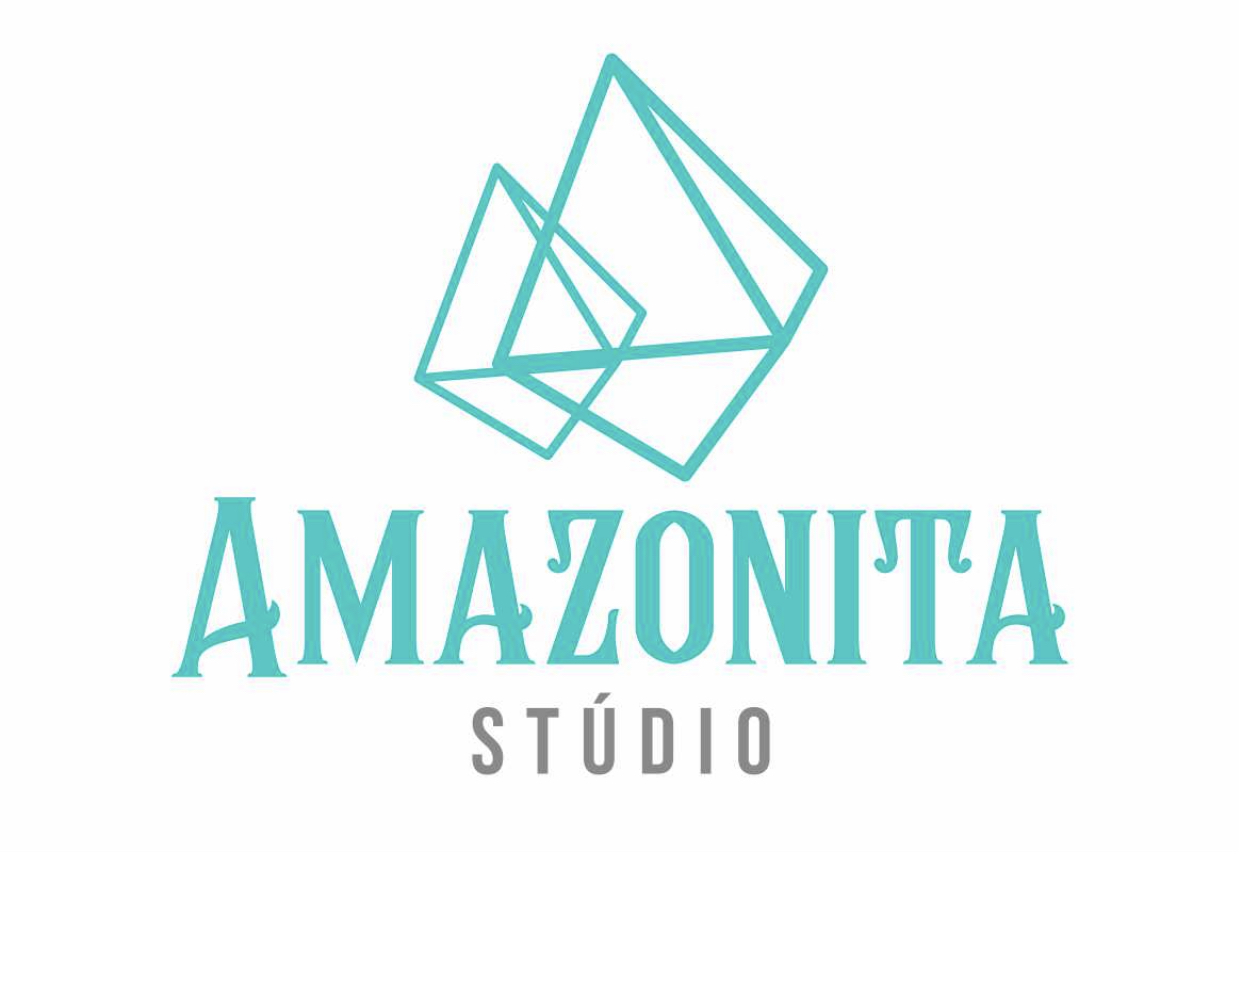 Amazonita Stúdio